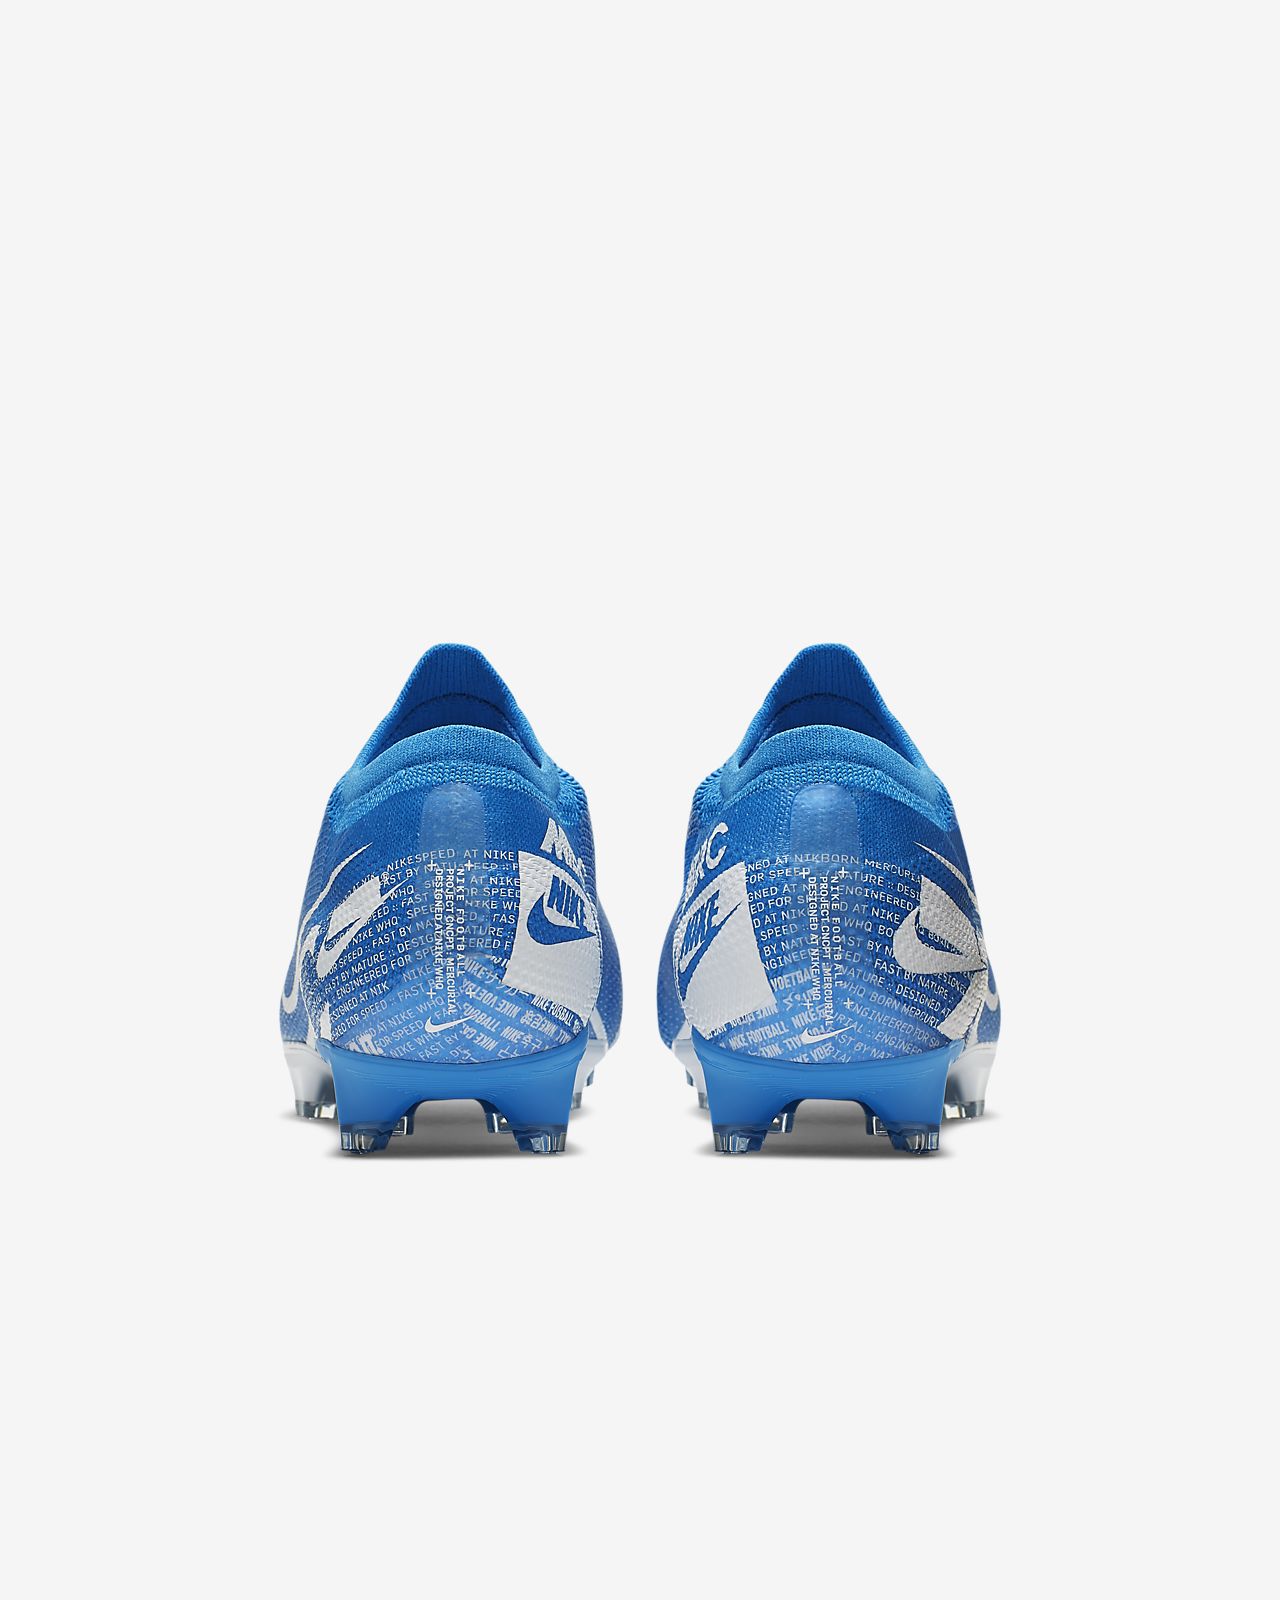 Vente chaussure de foot Nike Mercurial Vapor XII Elite pas